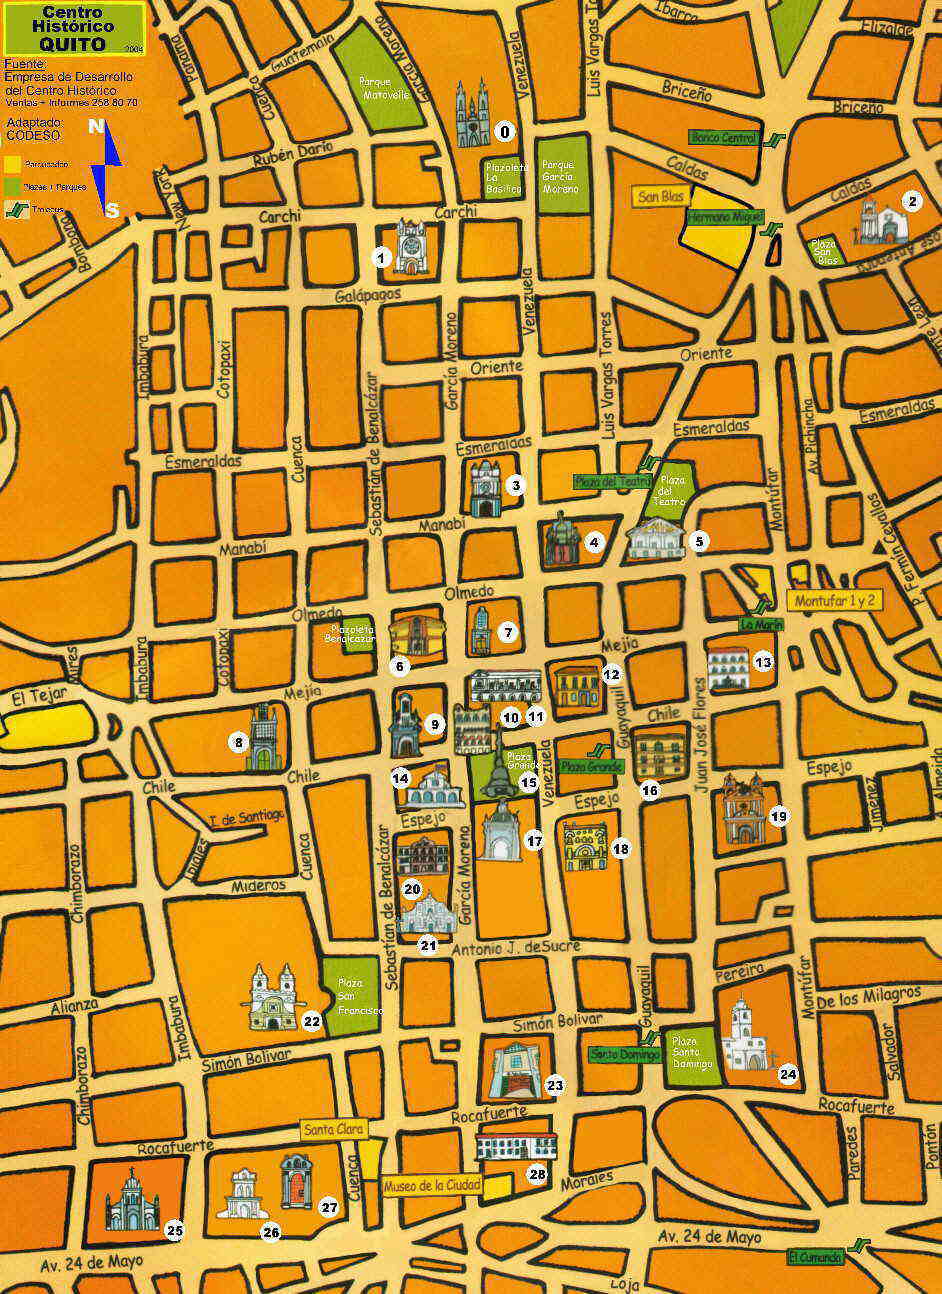 Mapa turistico Quito Centro historico Historic Center Historisches Zentrum